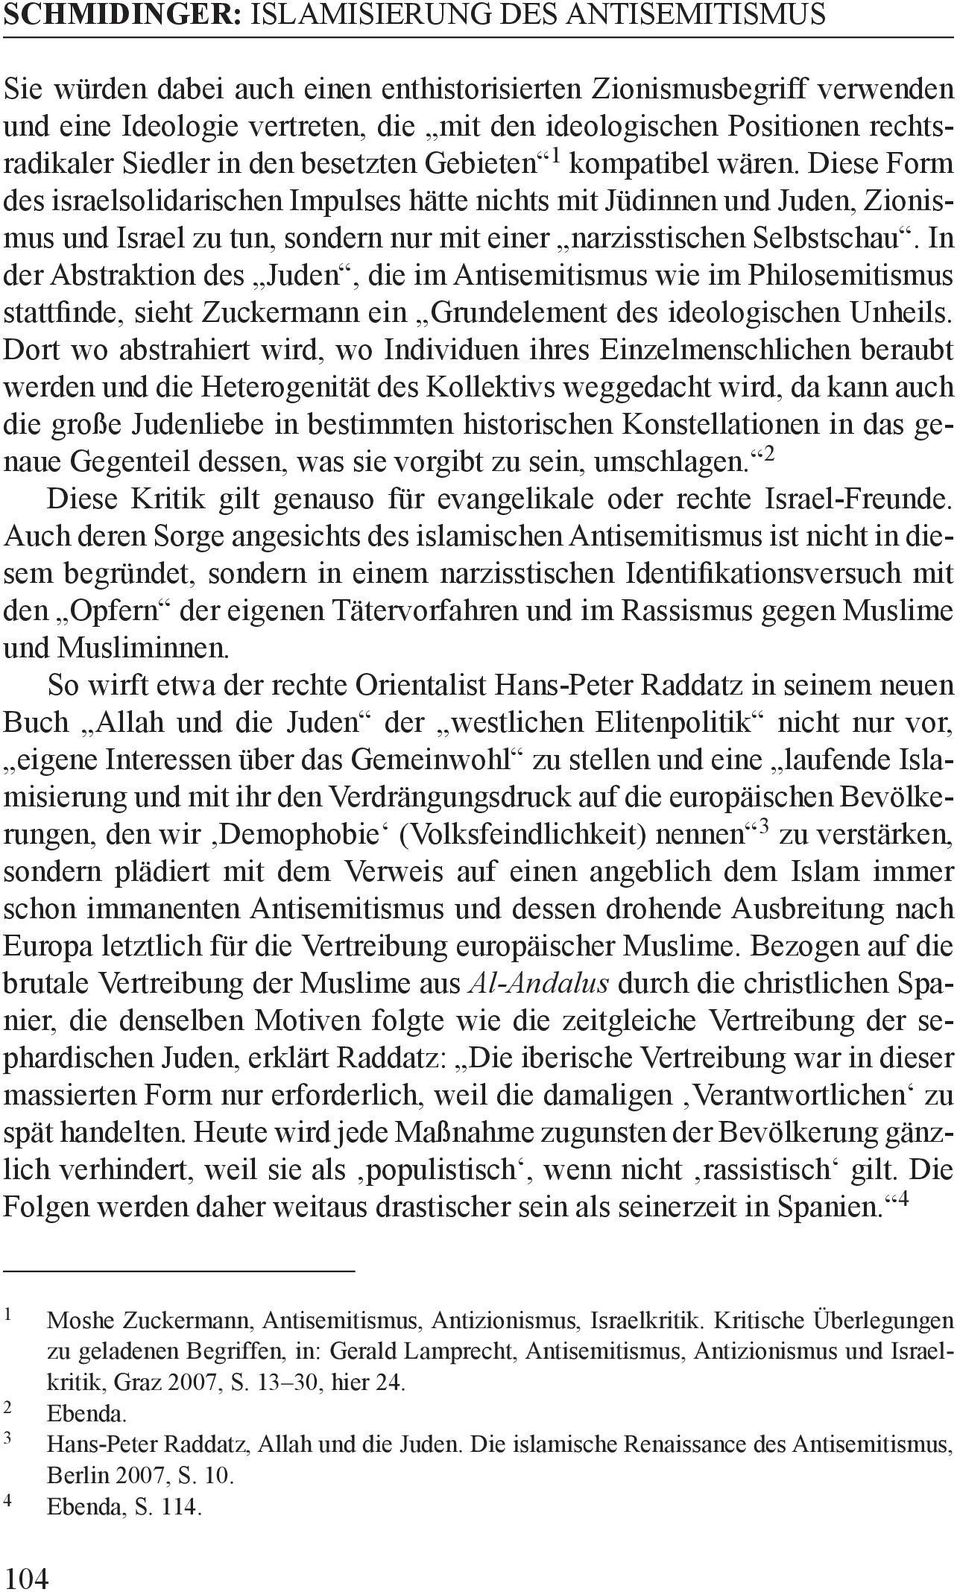 In der Abstraktion des Juden, die im Antisemitismus wie im Philosemitismus stattfinde, sieht Zuckermann ein Grundelement des ideologischen Unheils.